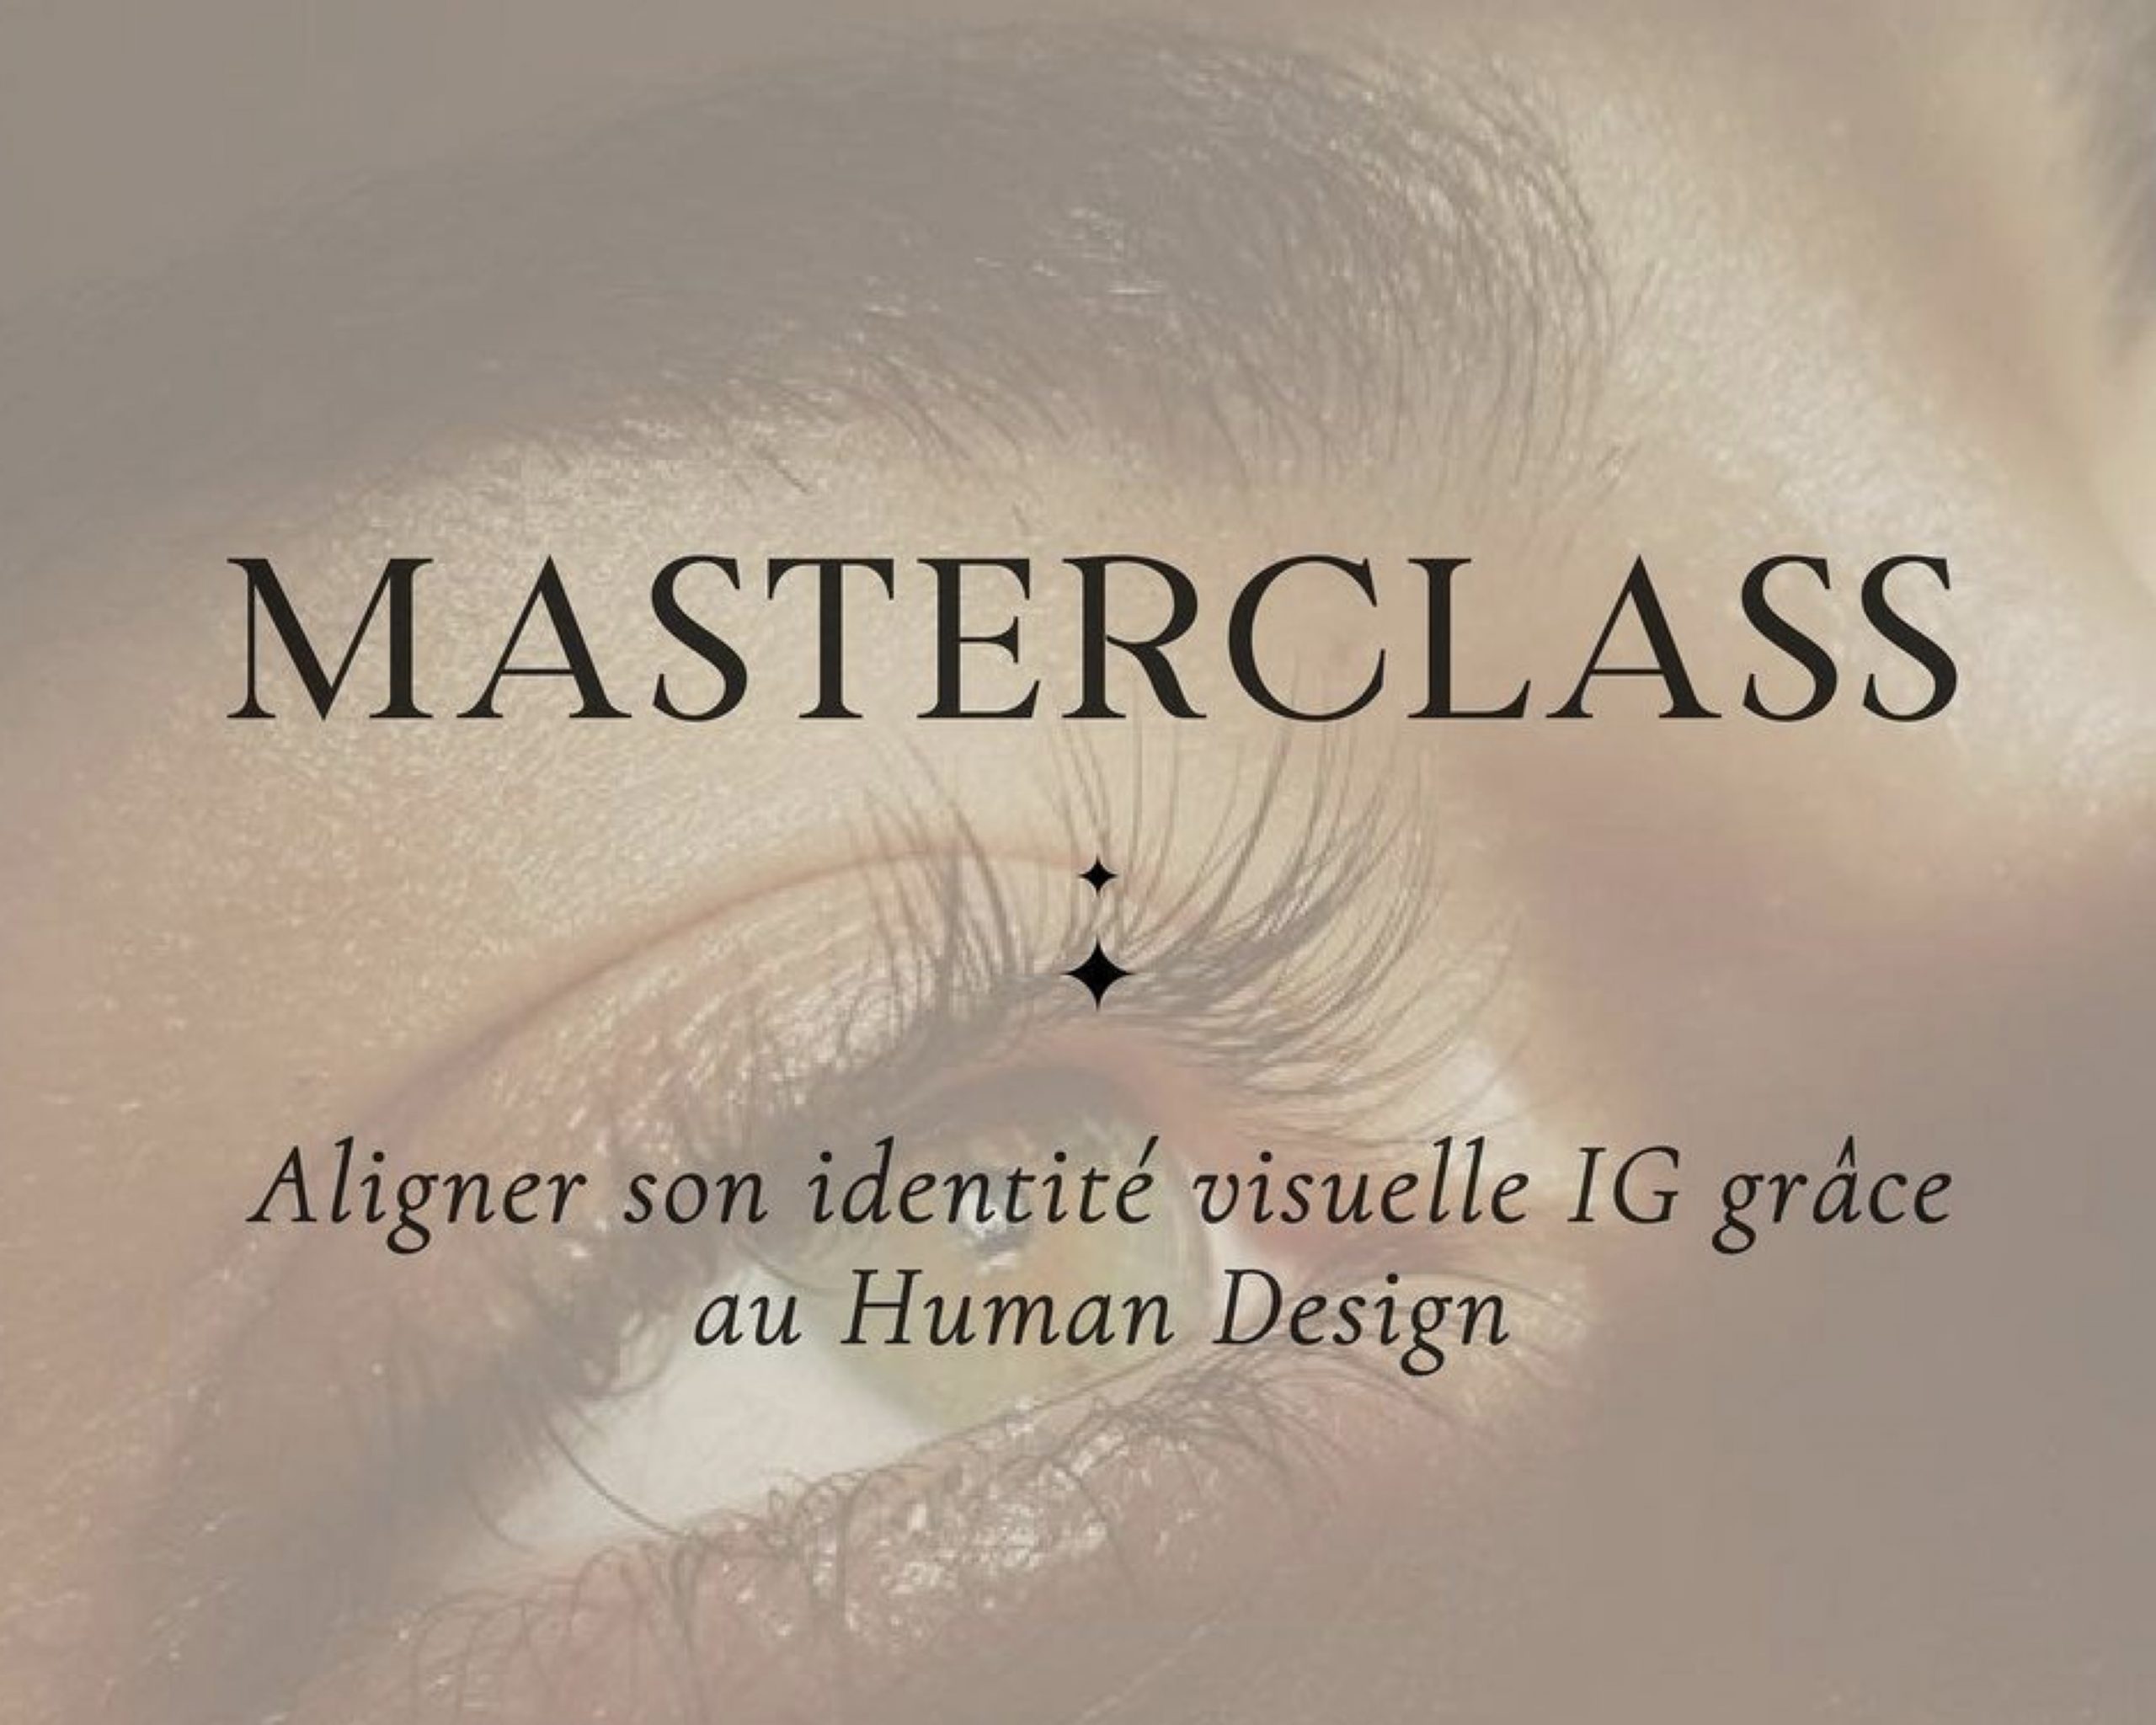 Master Class – Aligner son identité visuelle Instagram à soi grâce au Human Design